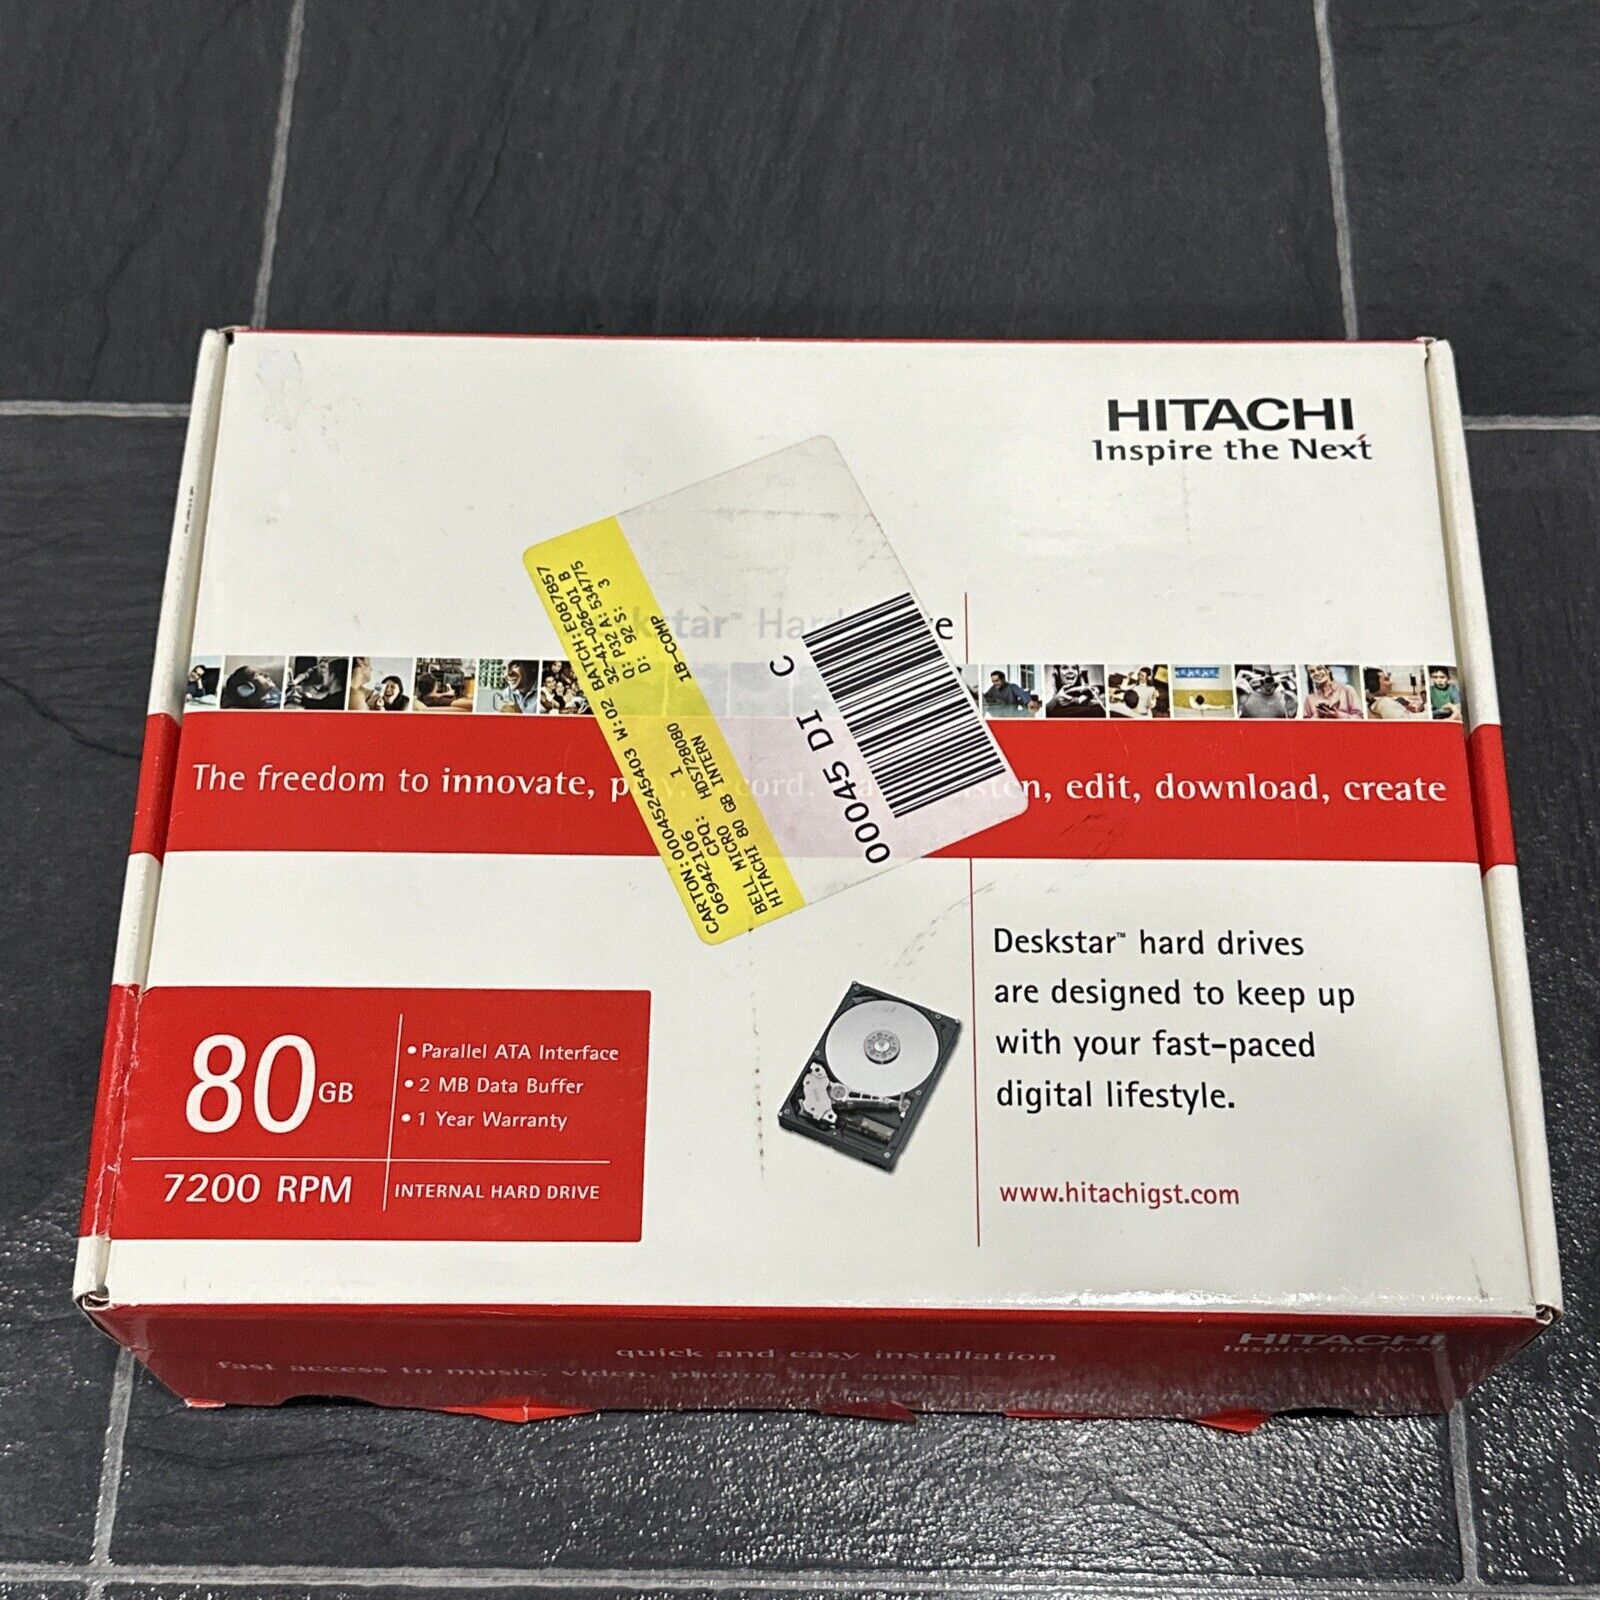 Hitachi Deskstar 80GB Hard Drive 7200 RPM HDS722580VLAT New Open Box